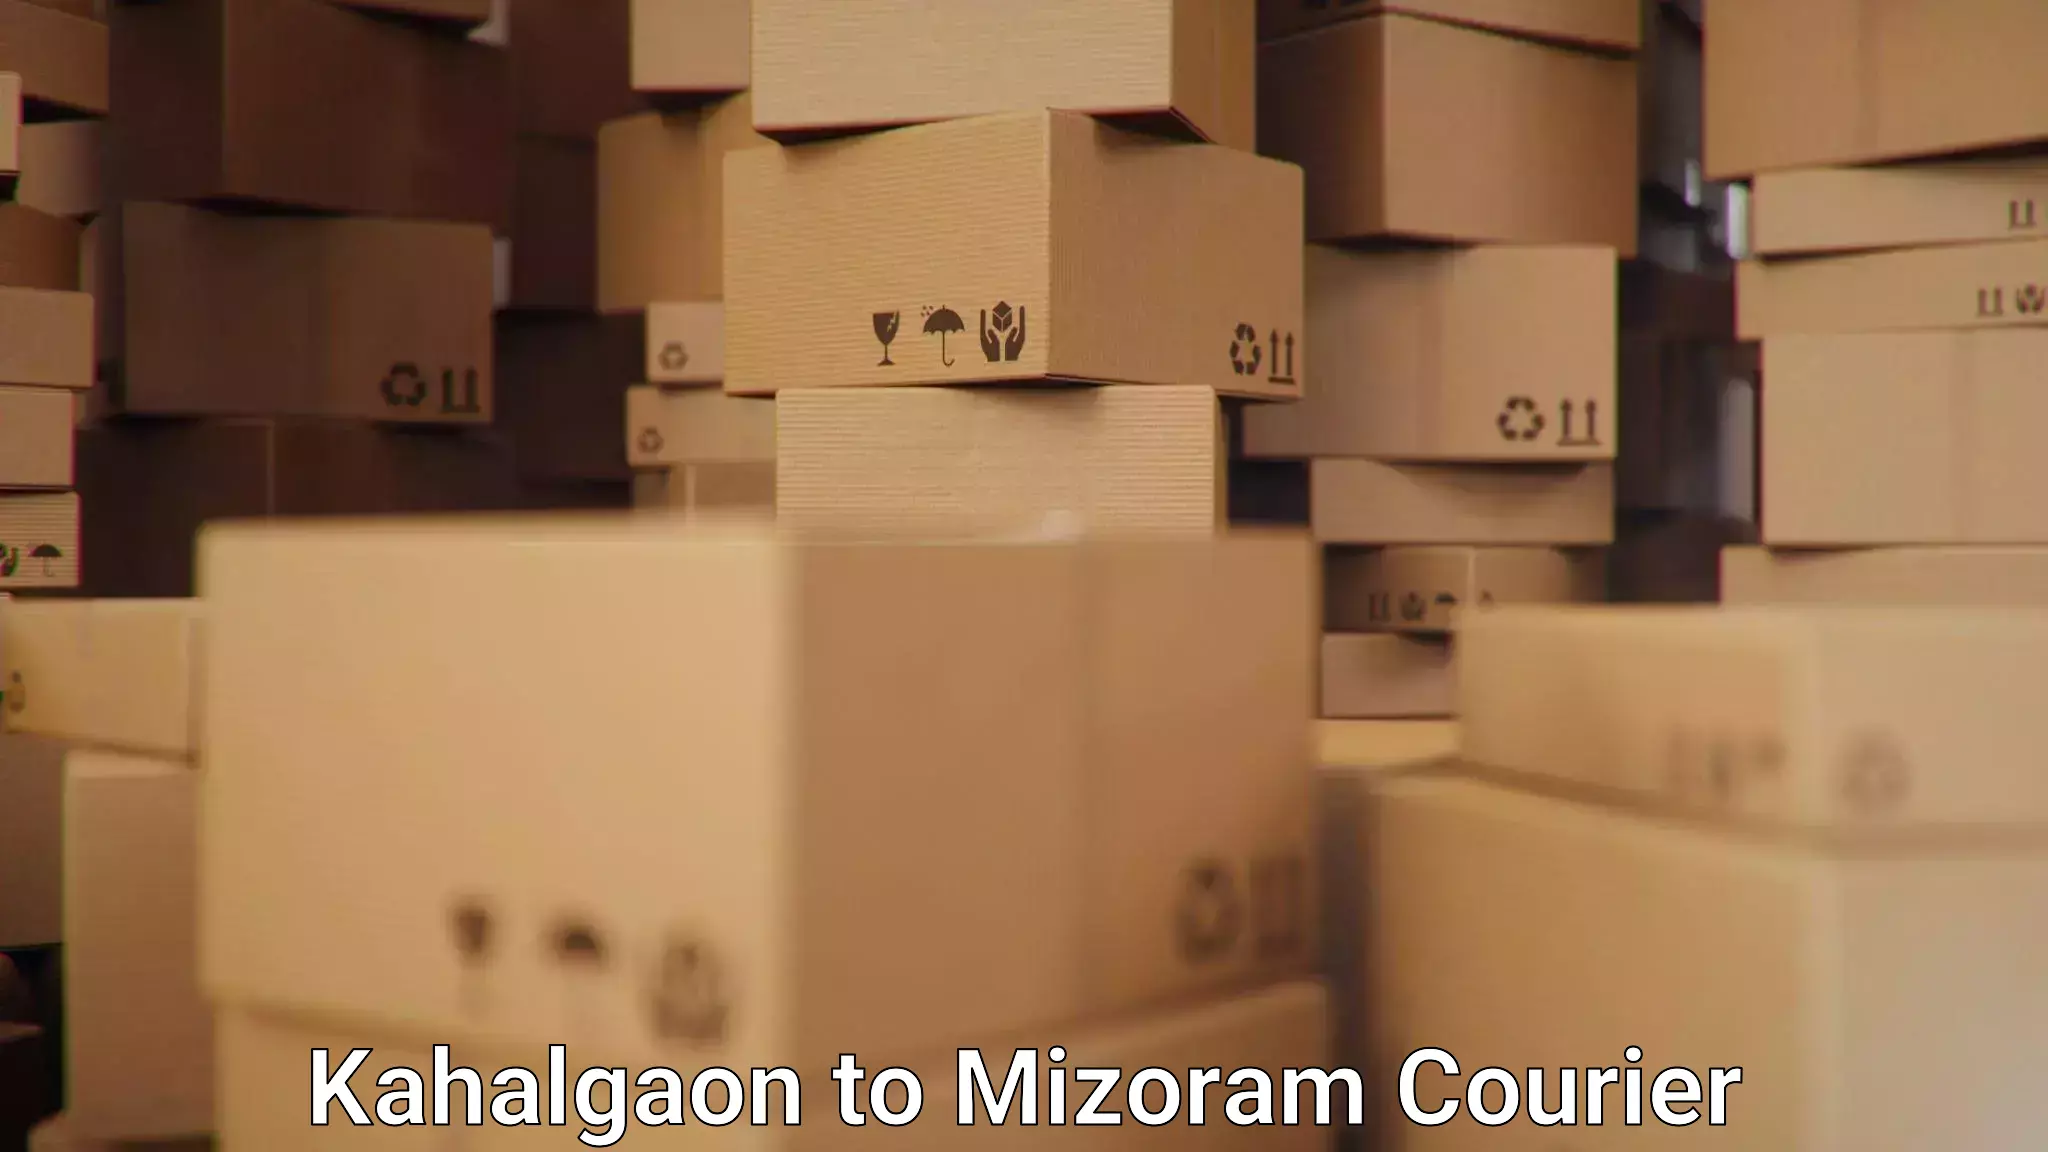 Premium courier solutions Kahalgaon to Mizoram